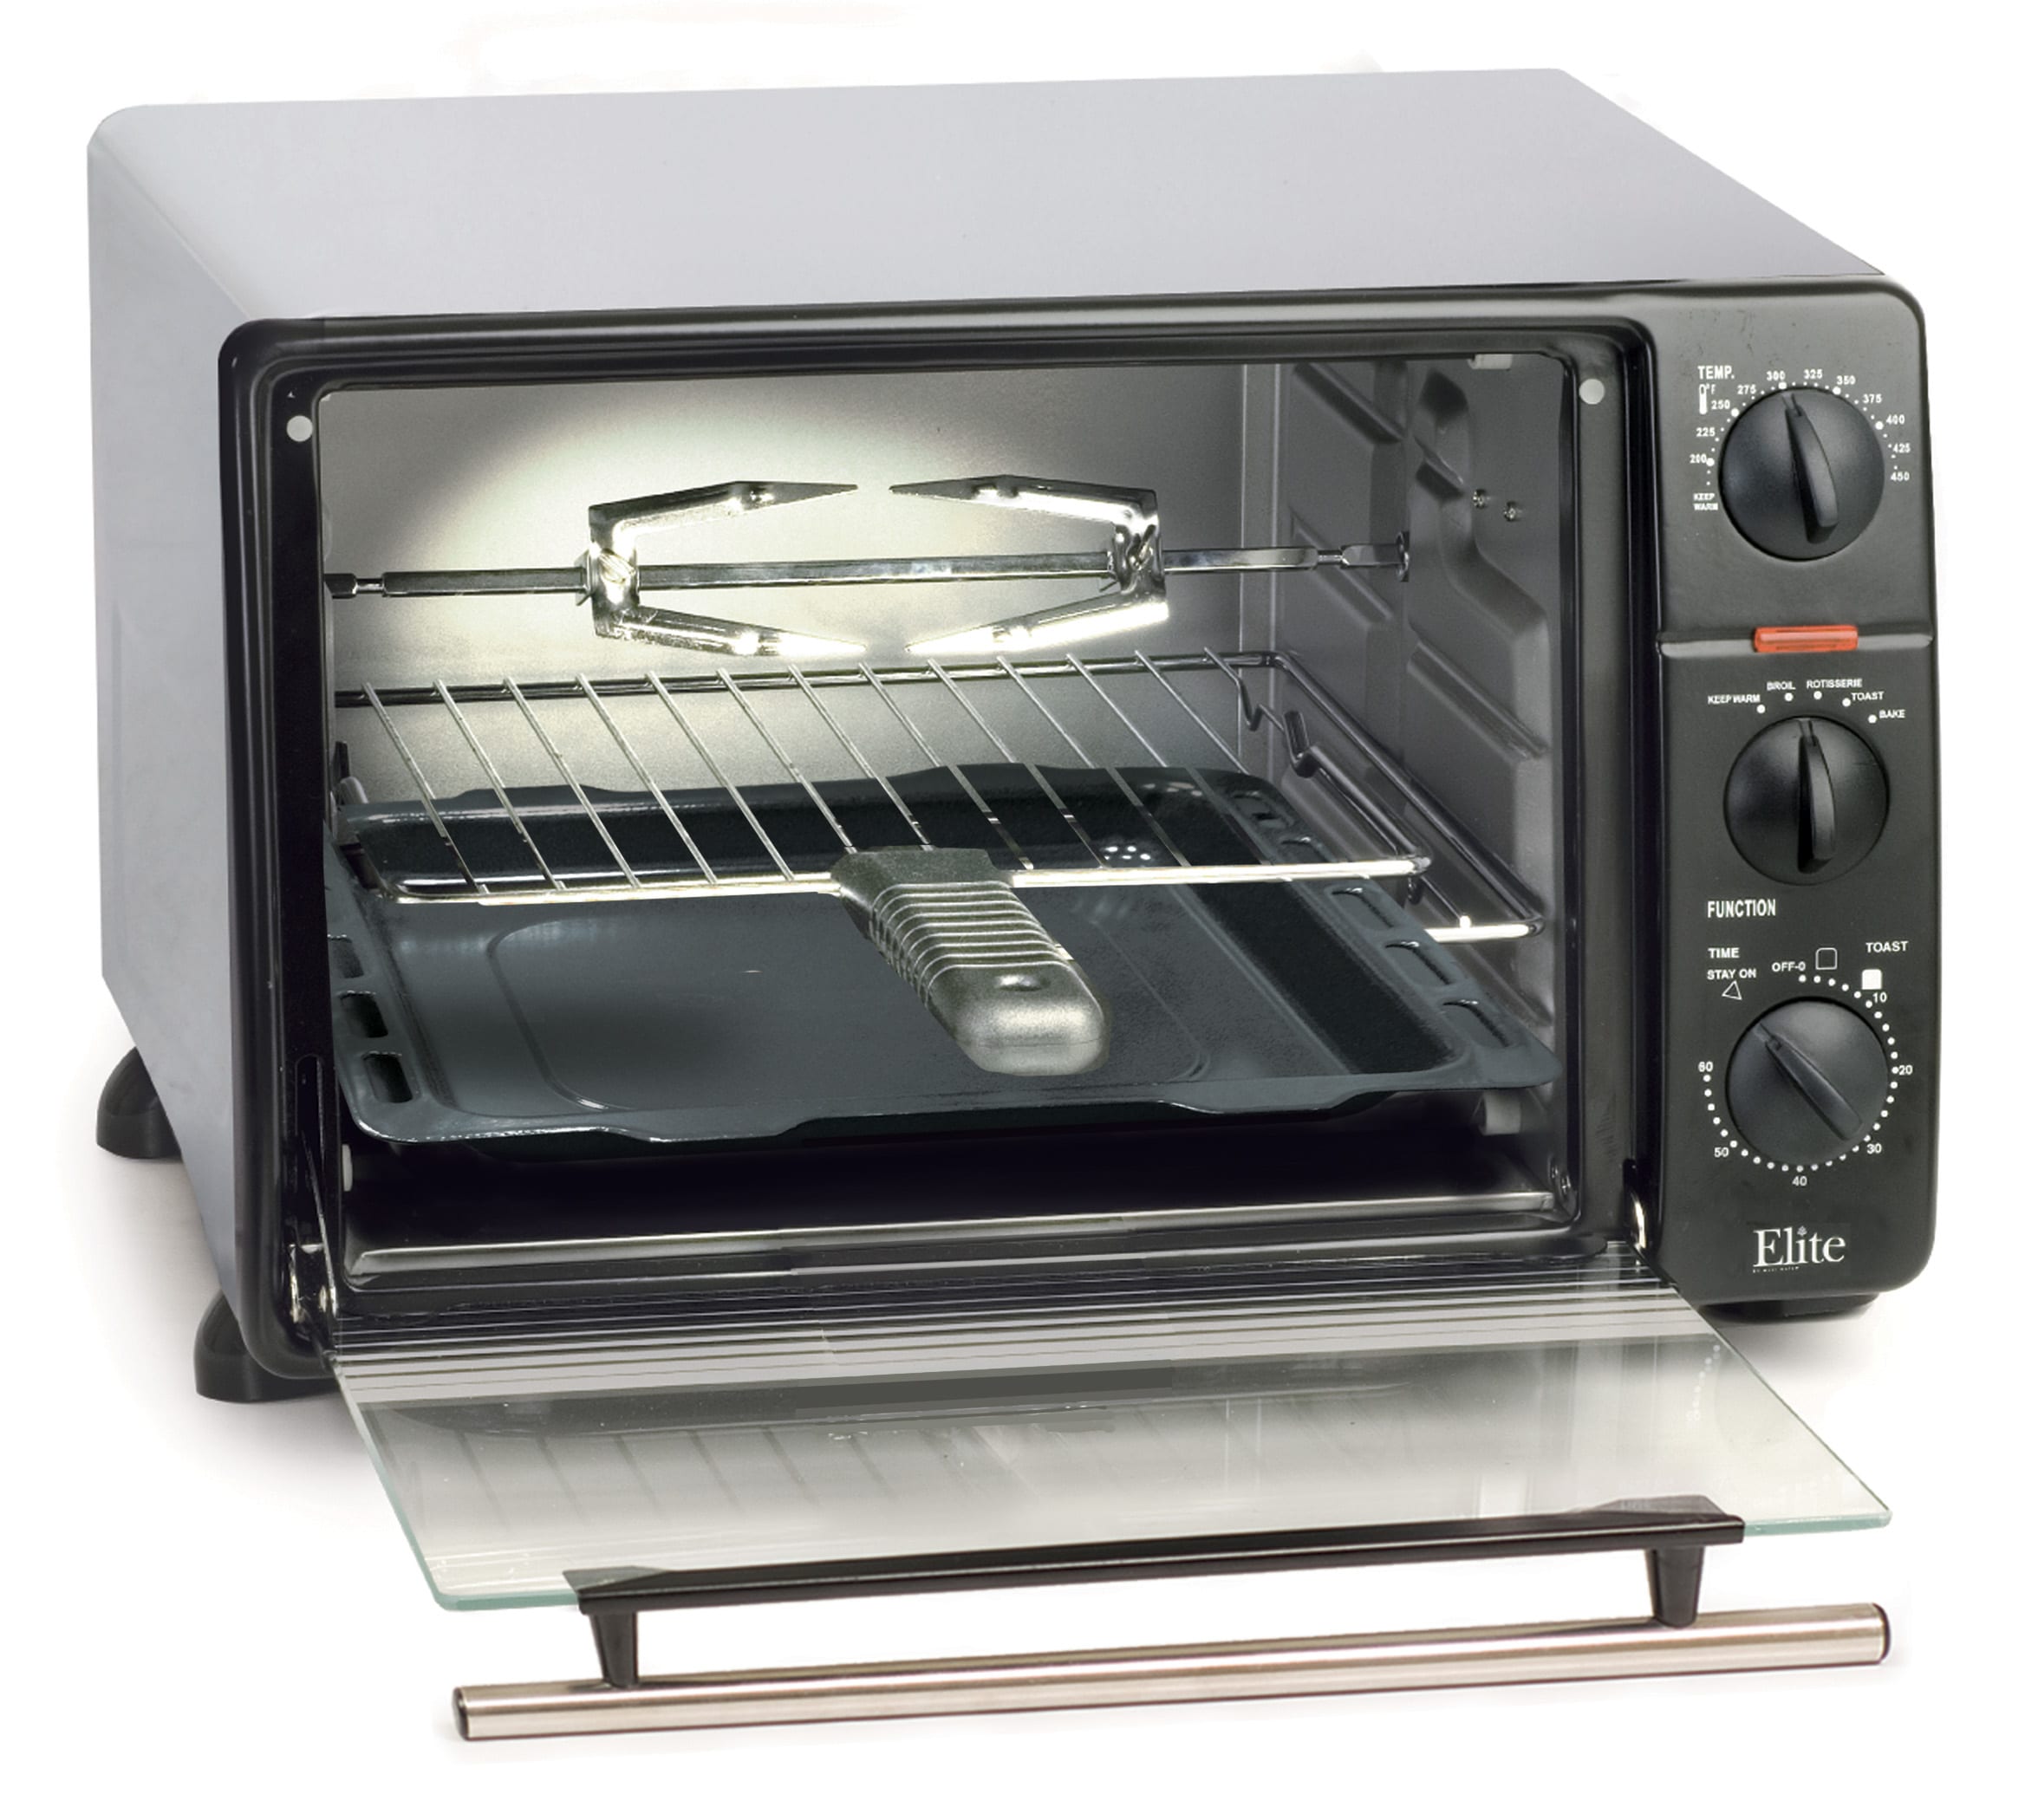 Minder Landelijk Echter Elite Unit, bake pan, rack, rotisserie skewer 6-Slice Black Toaster Oven  with Rotisserie (1500-Watt) at Lowes.com